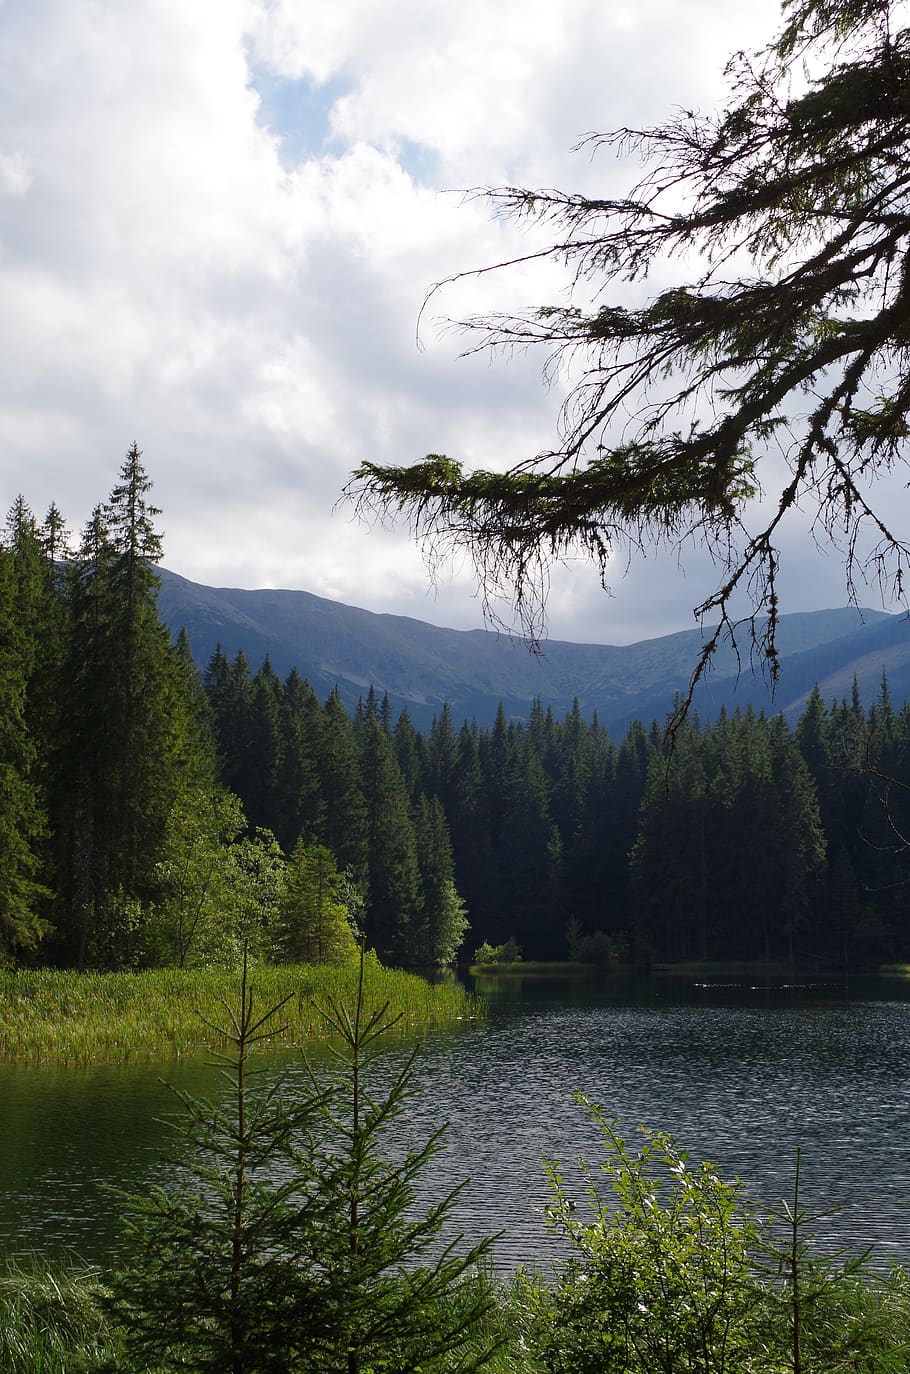 jernih, danau, slovakia, air, hutan, pegunungan, pepohonan, pohon, menanam, keindahan di alam